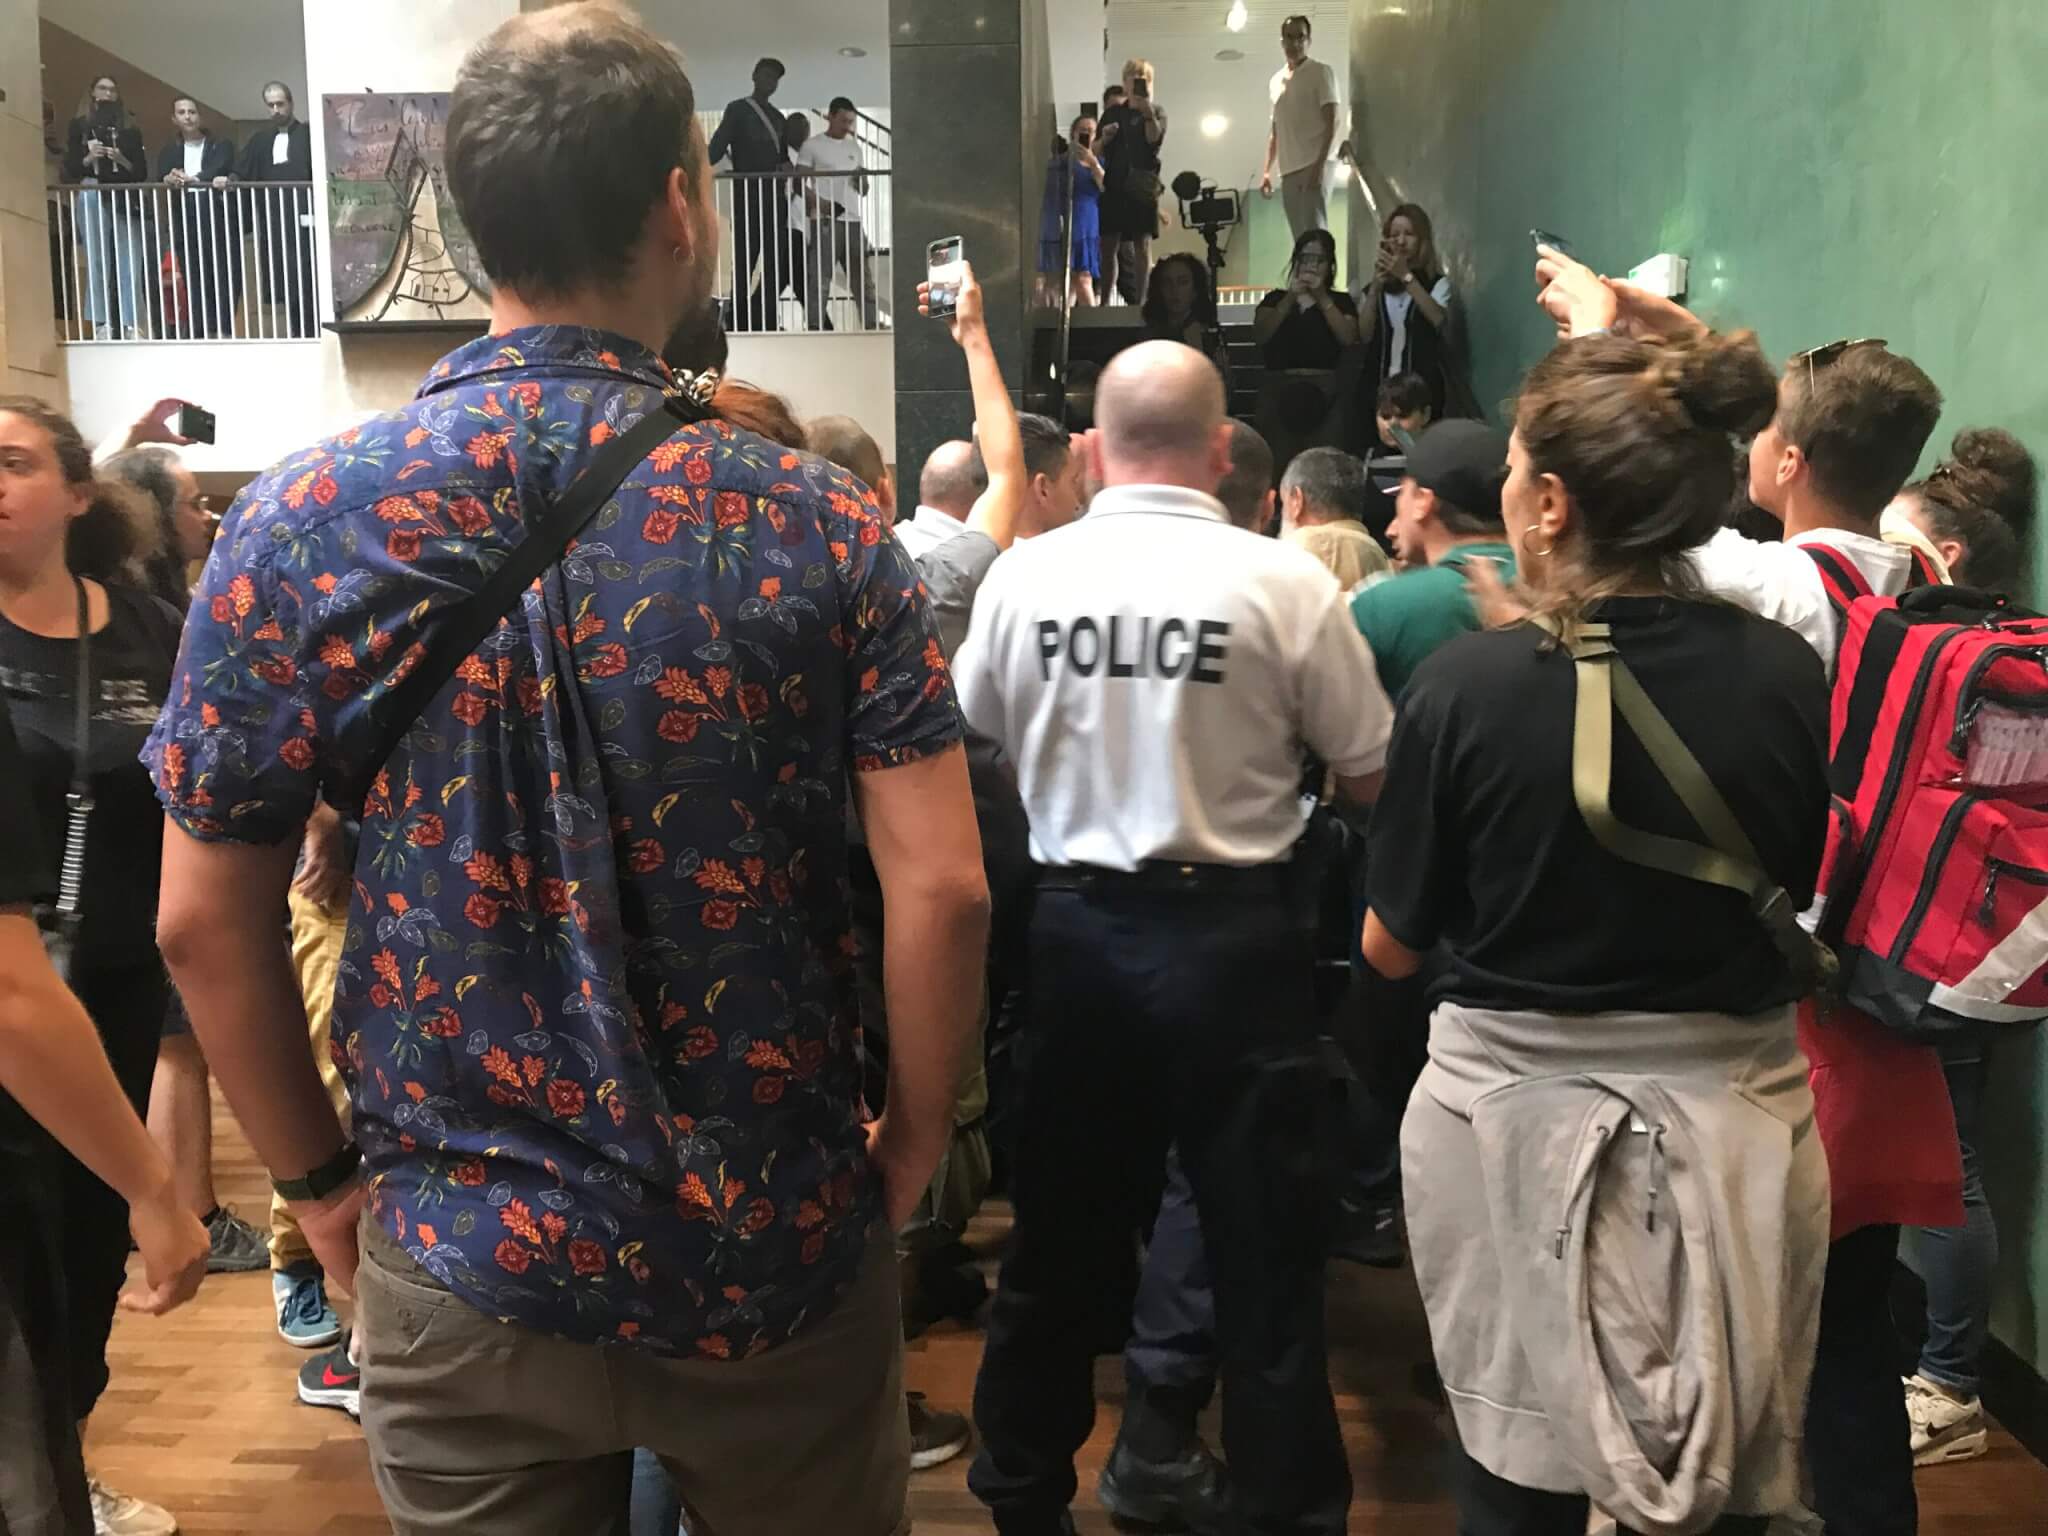 Un homme a été interpelé pour son tee-shirt anti-police lors du procès des émeutes au tribunal de Lyon.